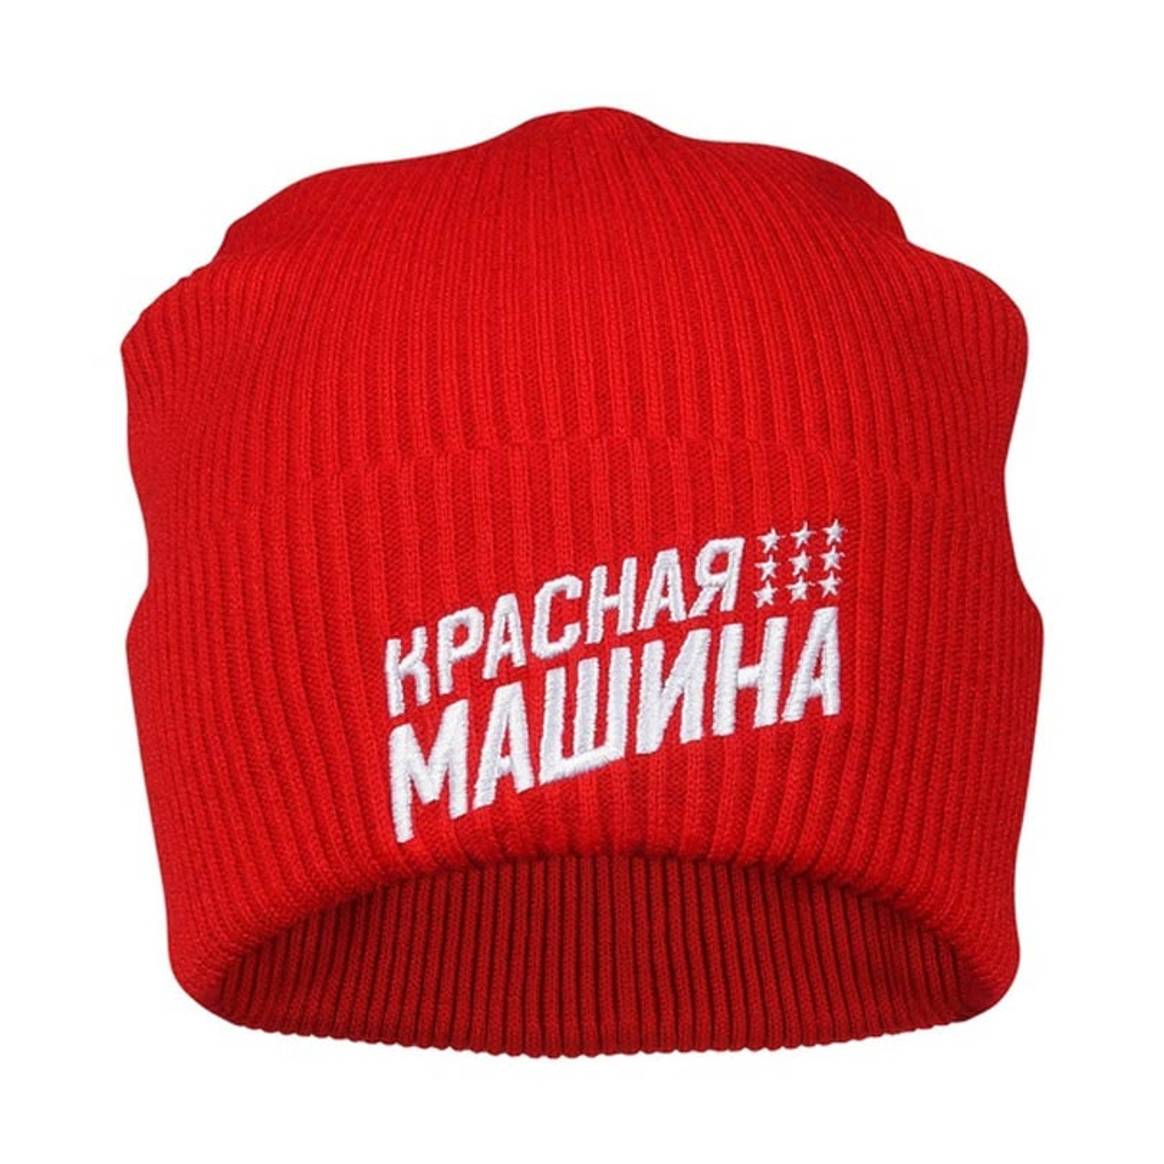 В Ивановской области начали выпускать одежду марки "Красная машина"